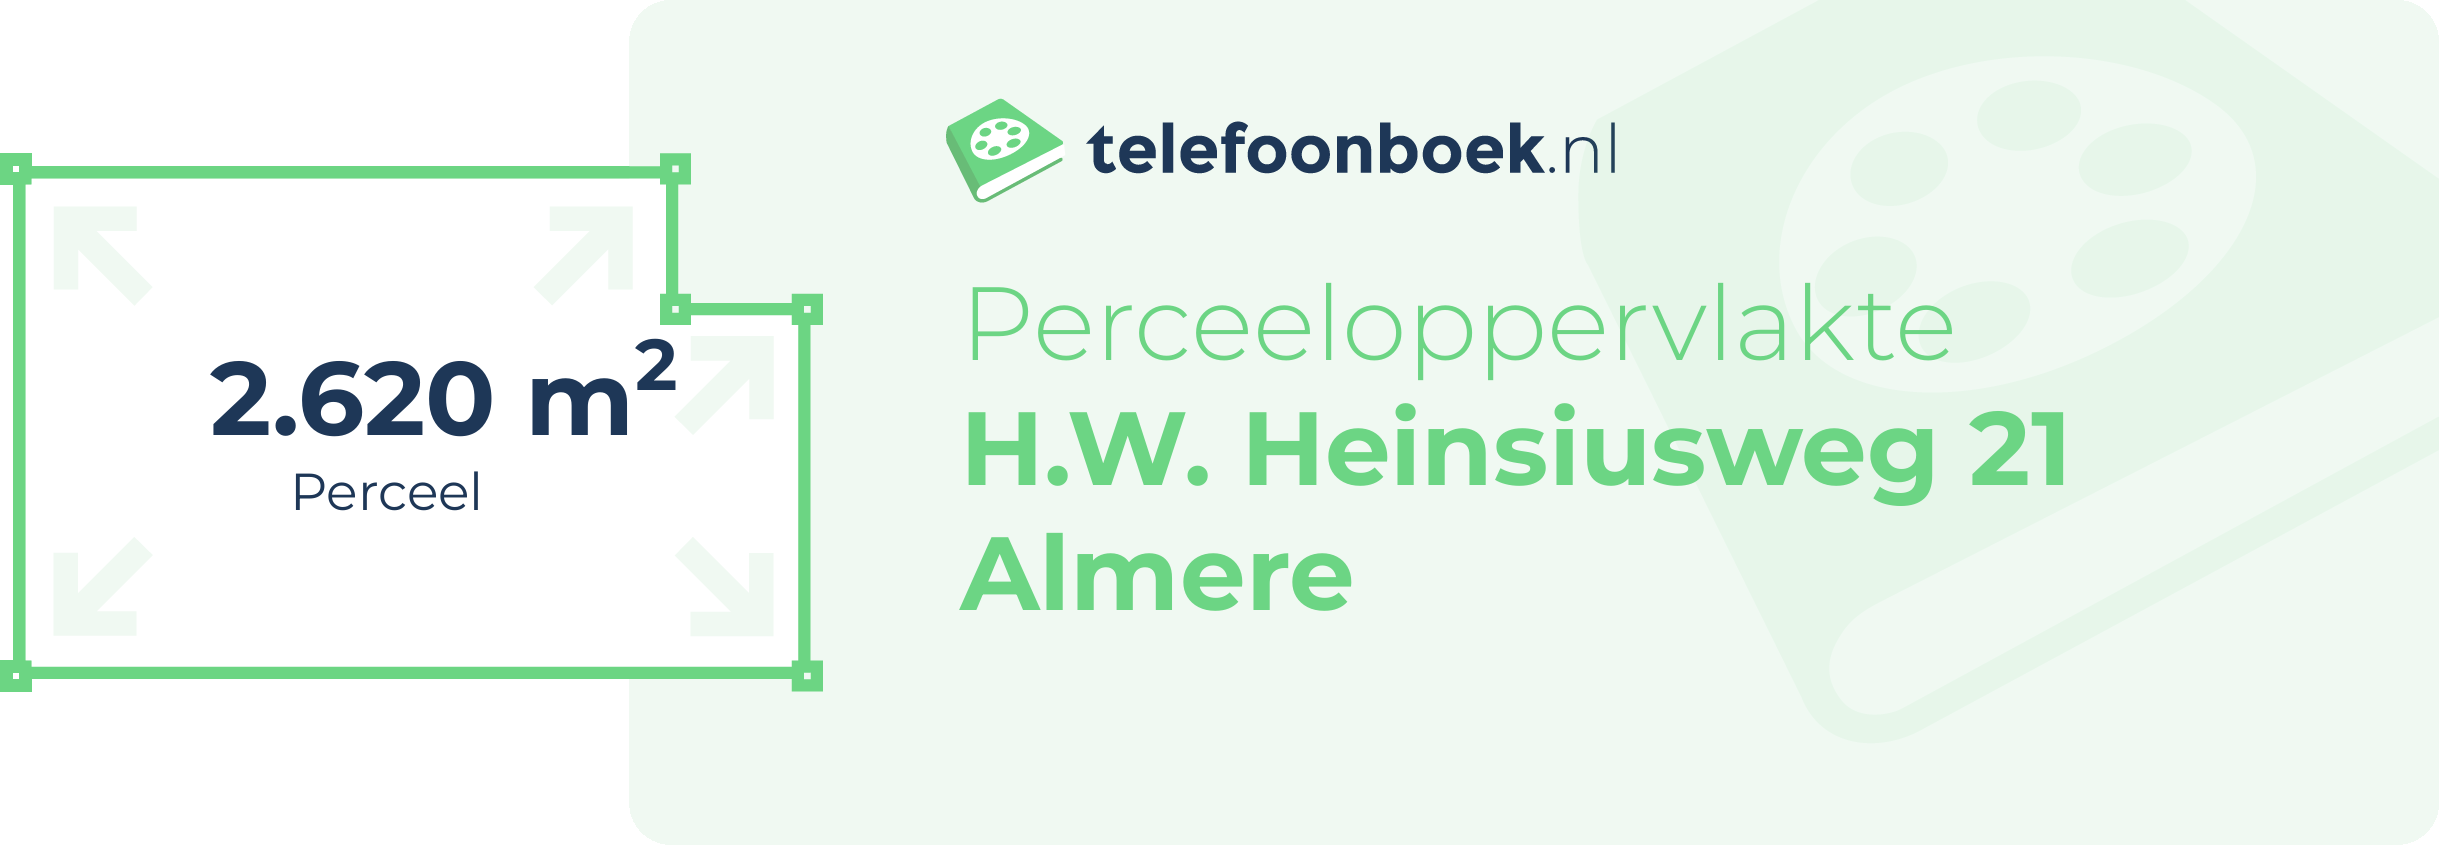 Perceeloppervlakte H.W. Heinsiusweg 21 Almere